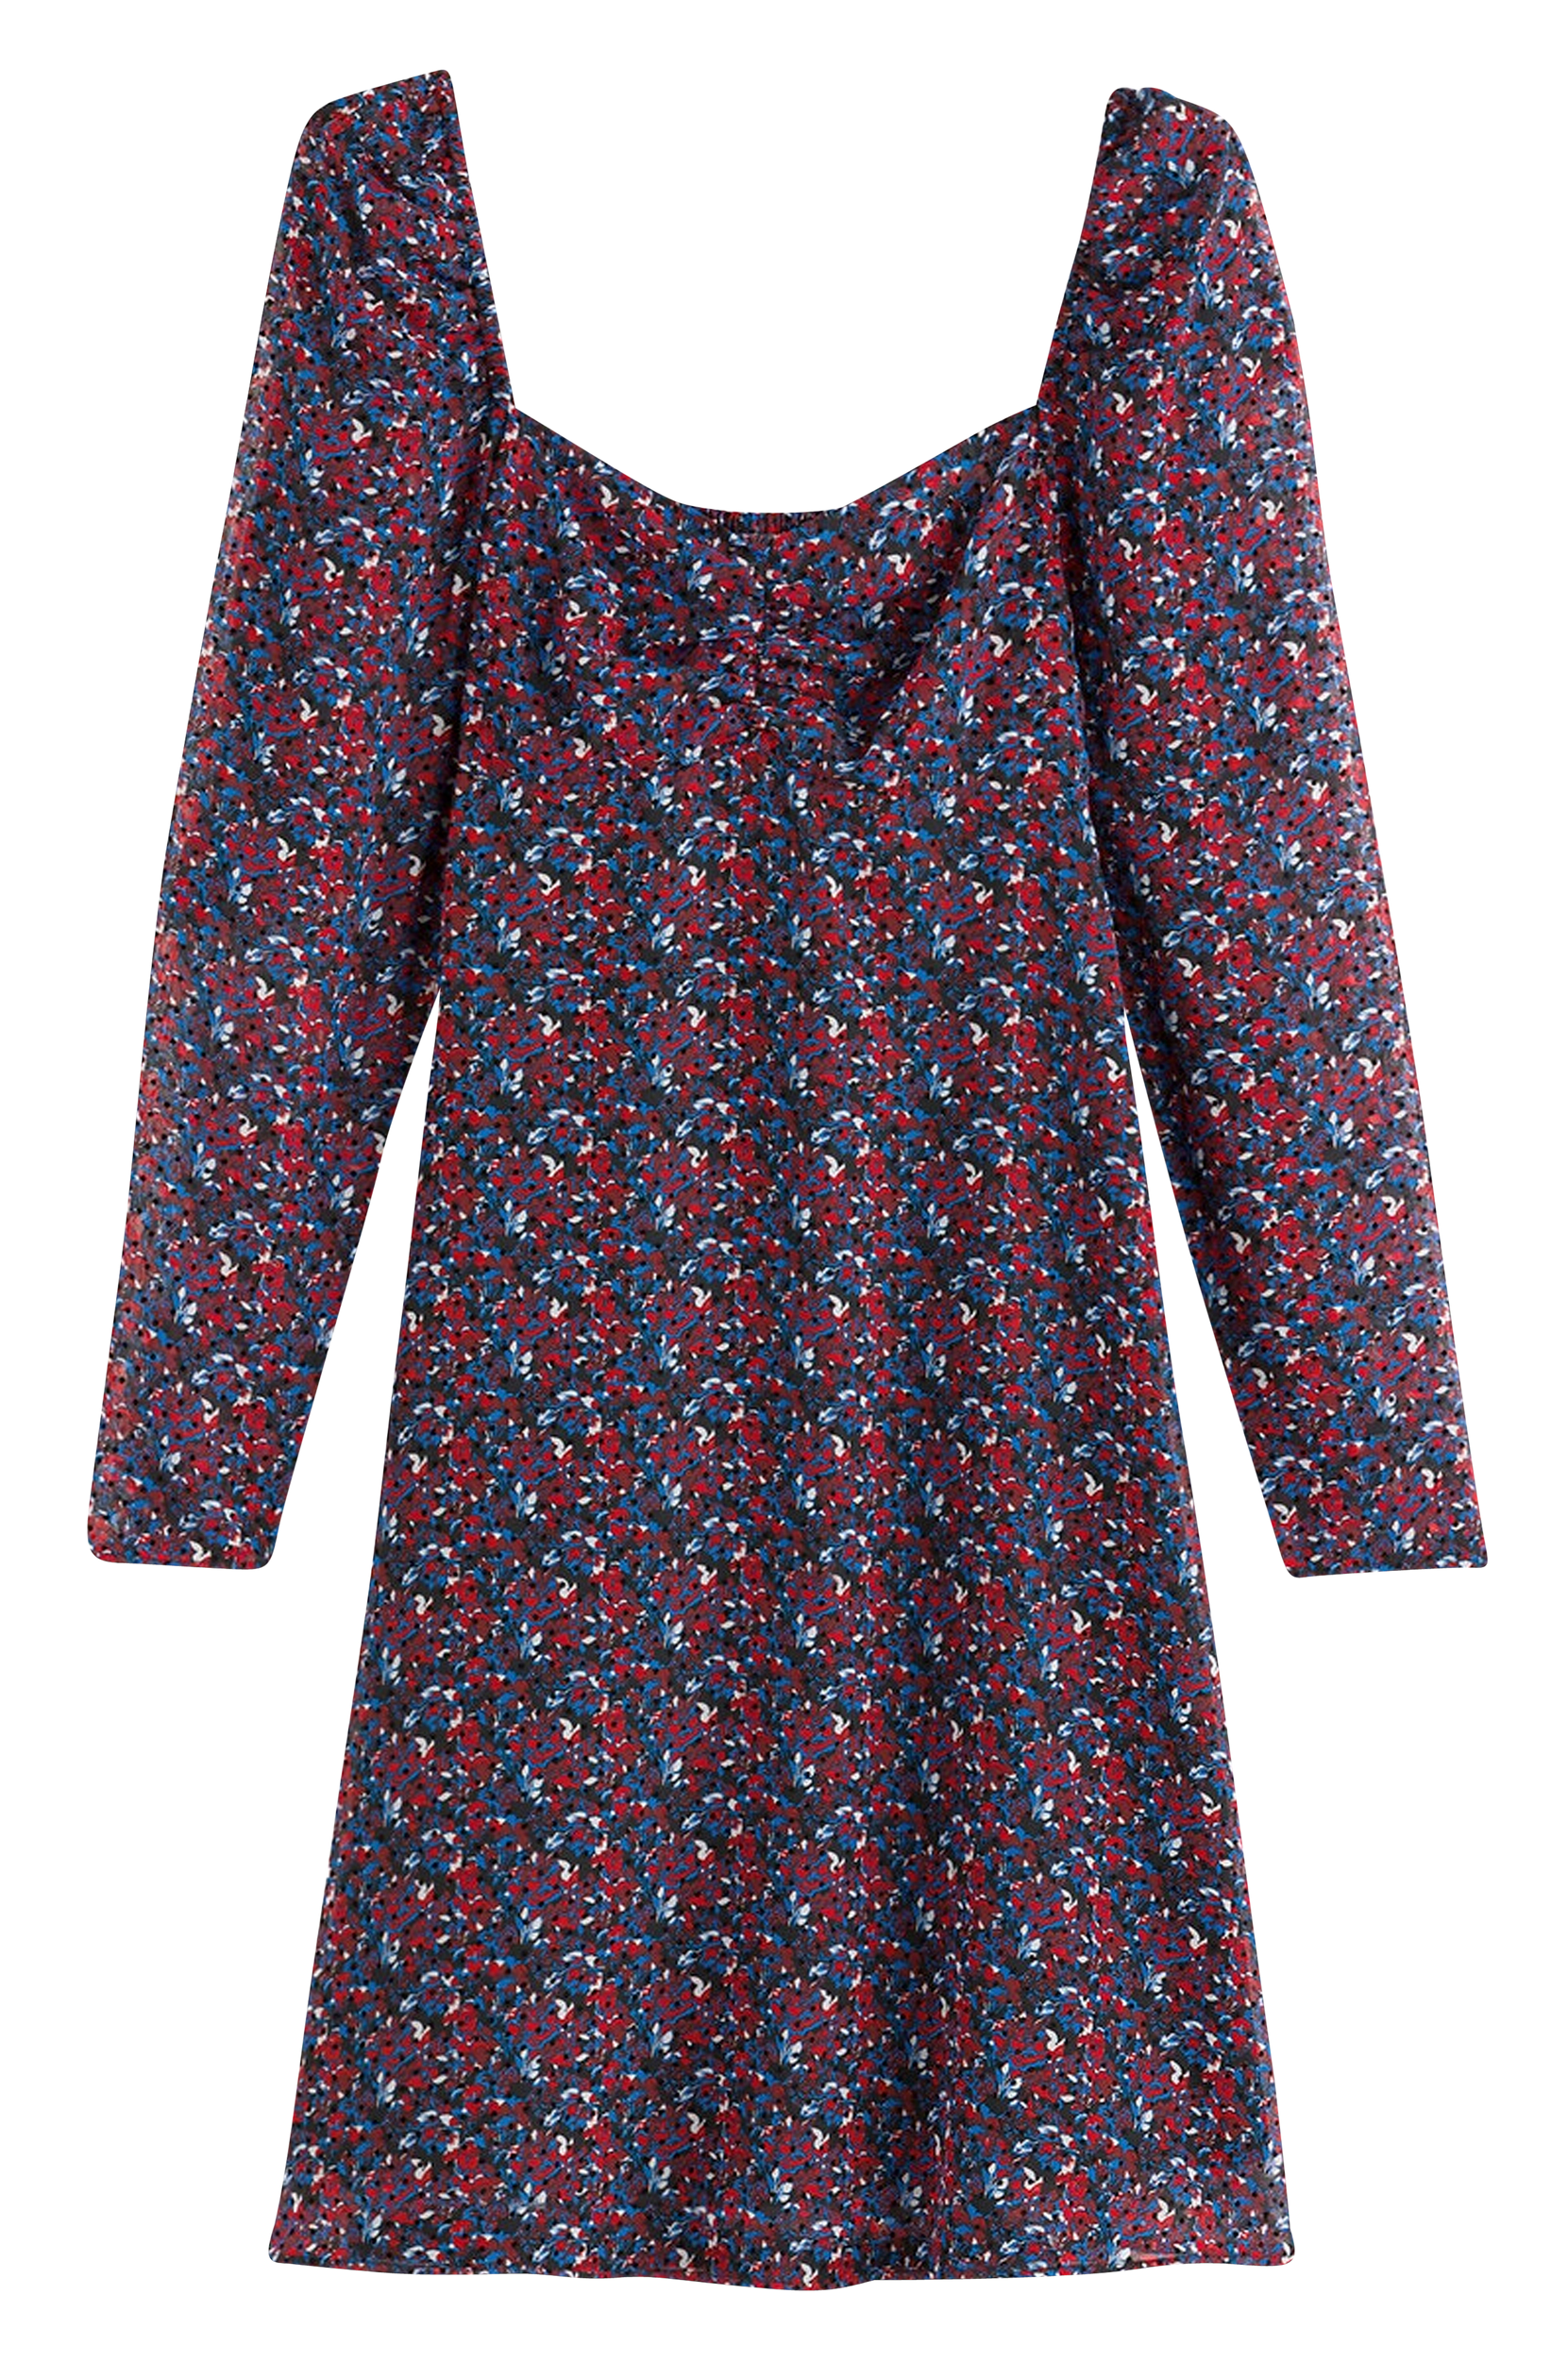 La Redoute - Kort, lige, mønstret kjole med V-udskæring og langt ærme - Multi - 36 Kjoler - Tøj til kvinder (29031796)